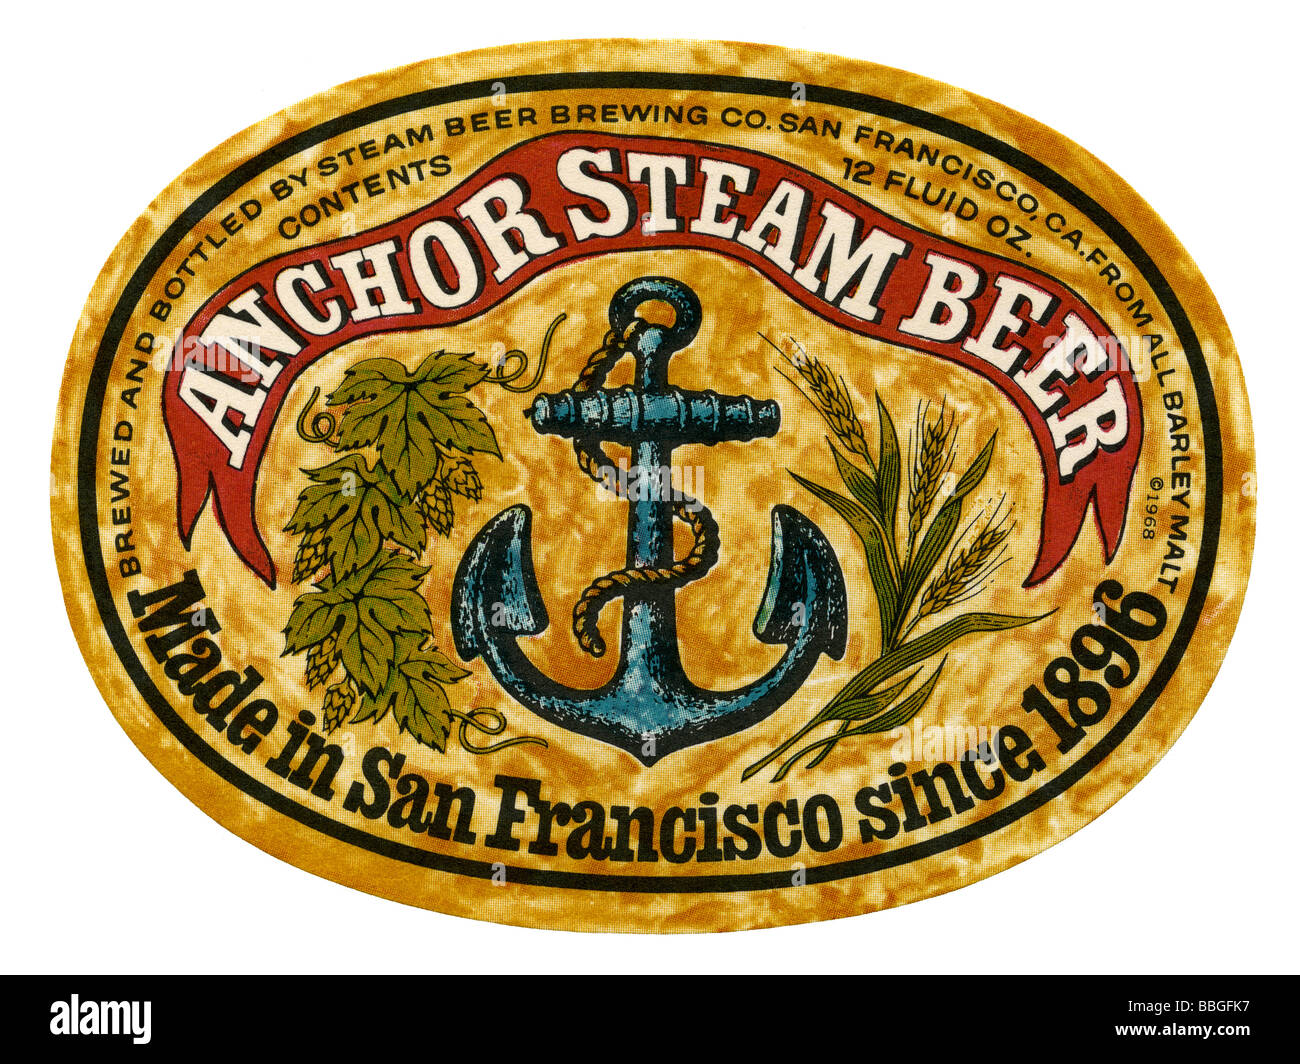 Vieille bière étiquette pour Anchor Steam Beer, San Francisco, California, USA Banque D'Images